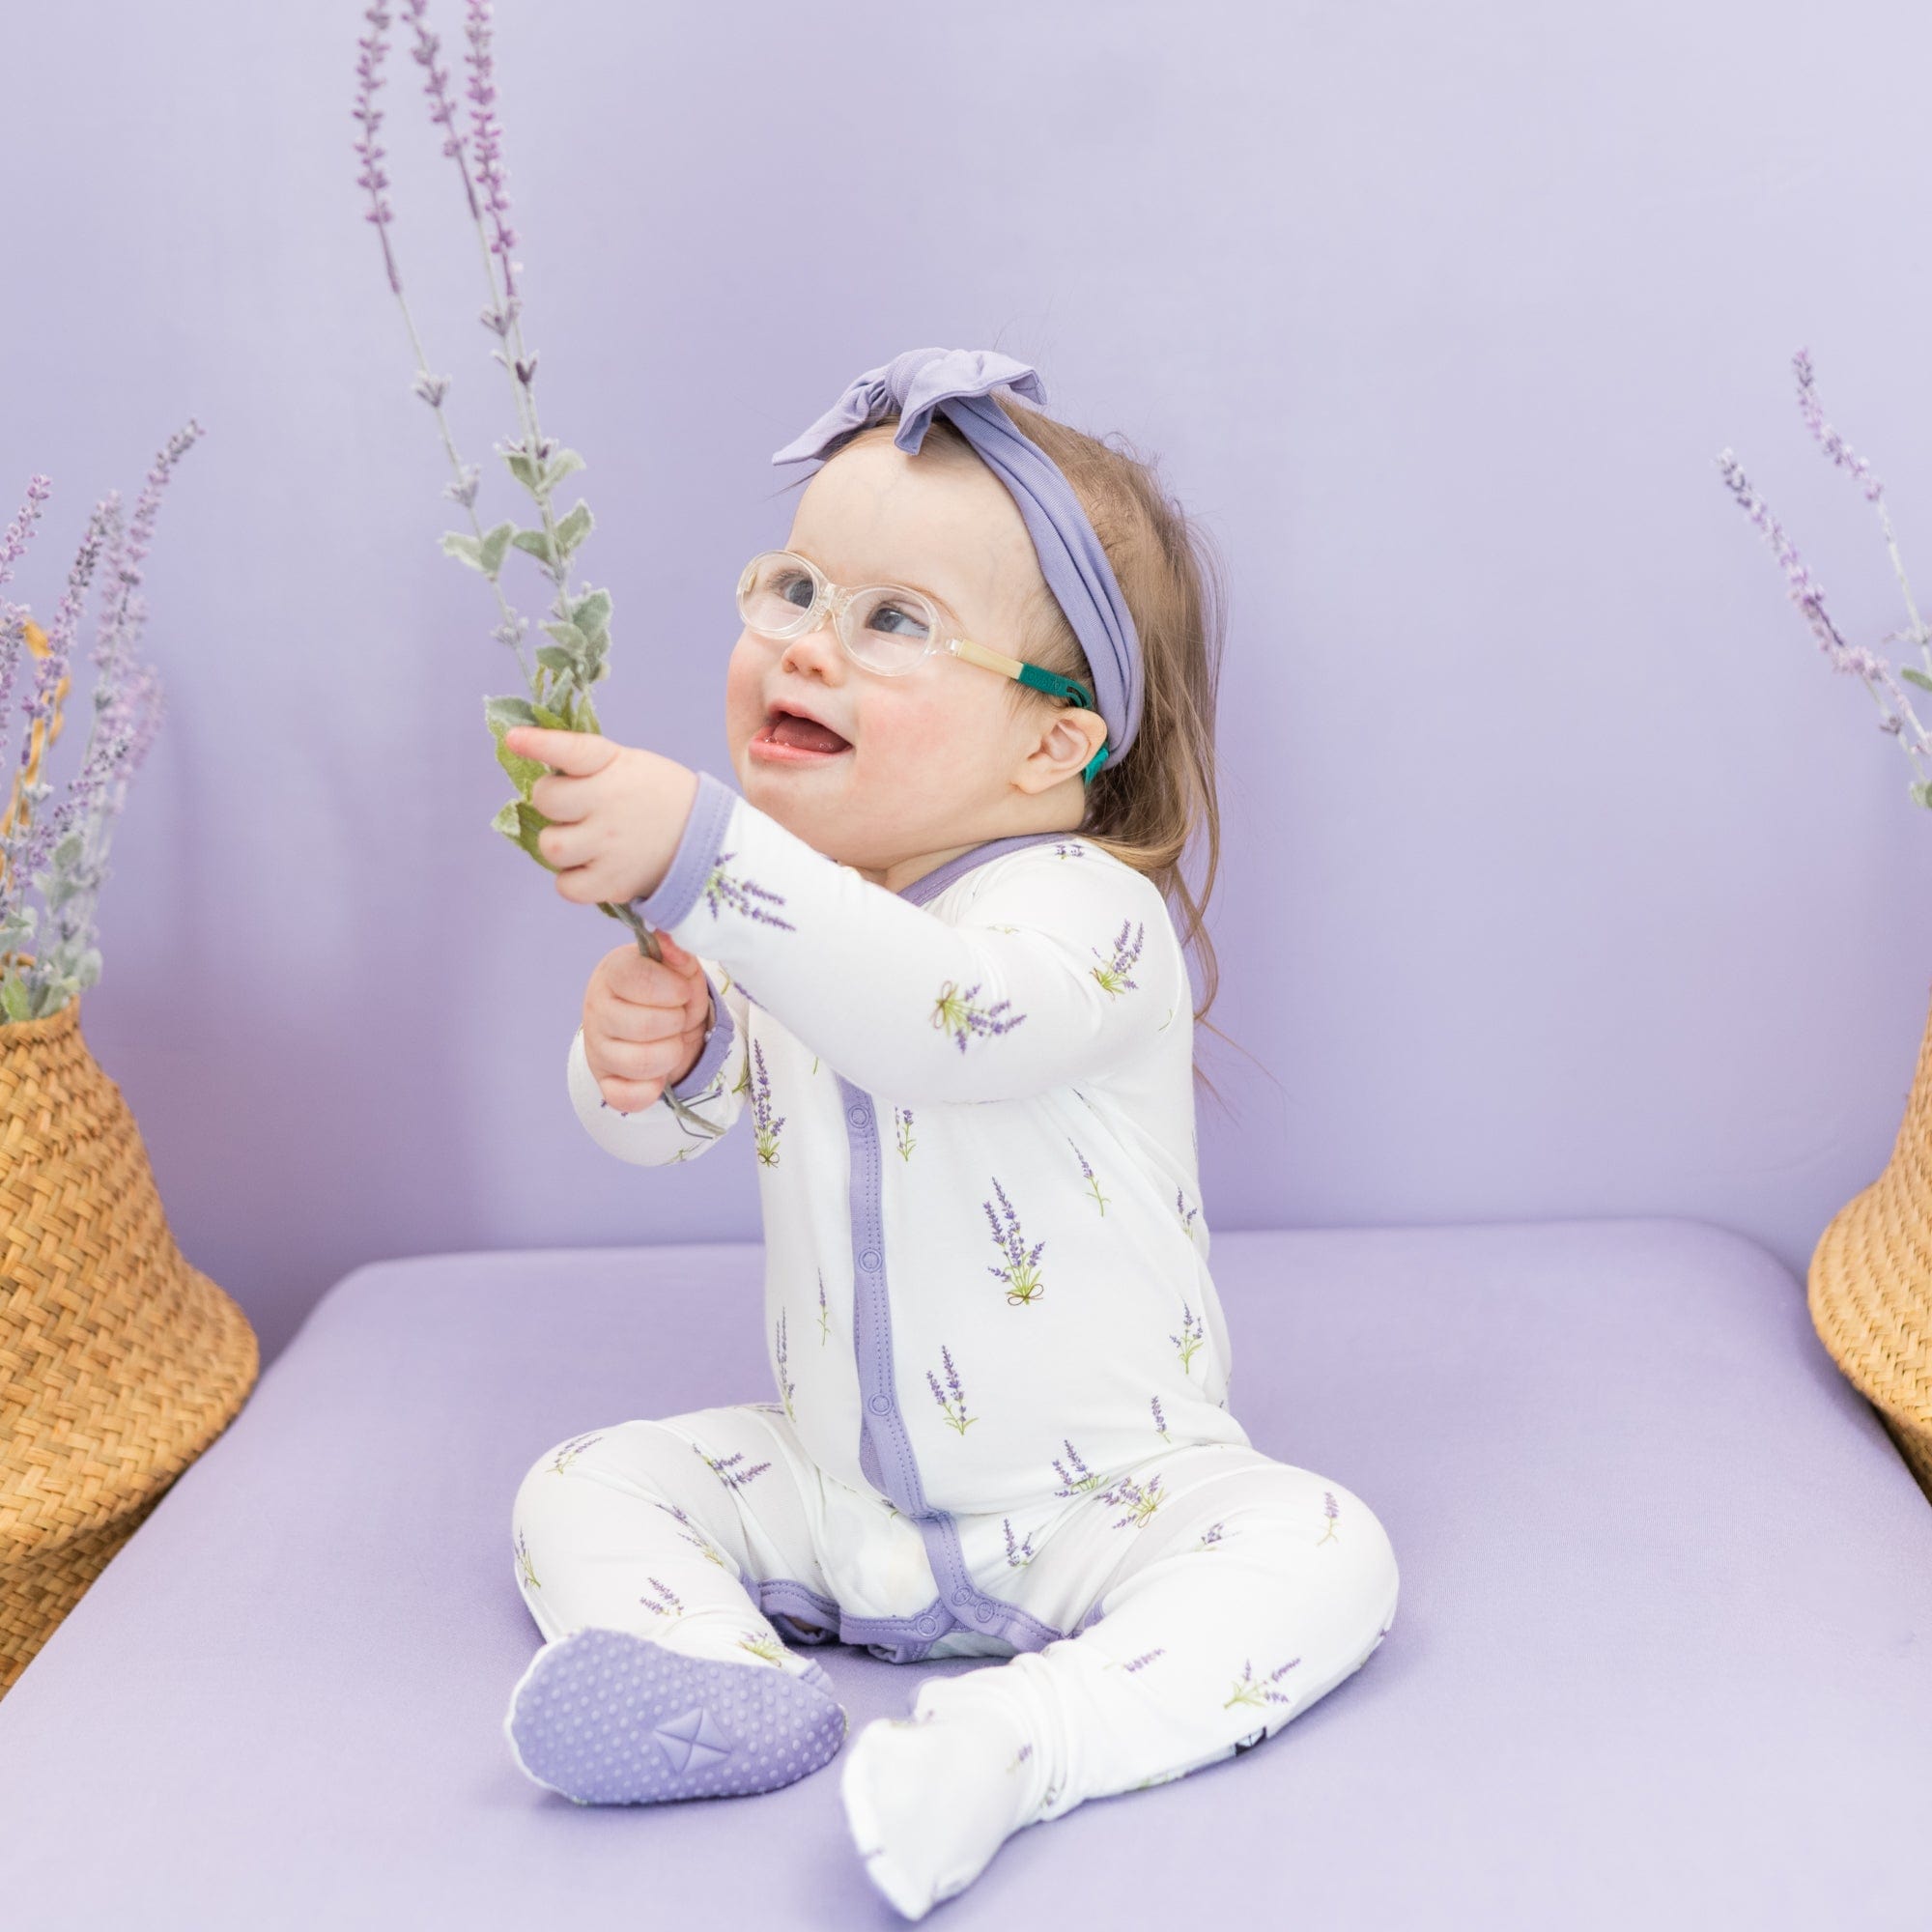 Kyte Baby Snap Footies Footie in Lavender